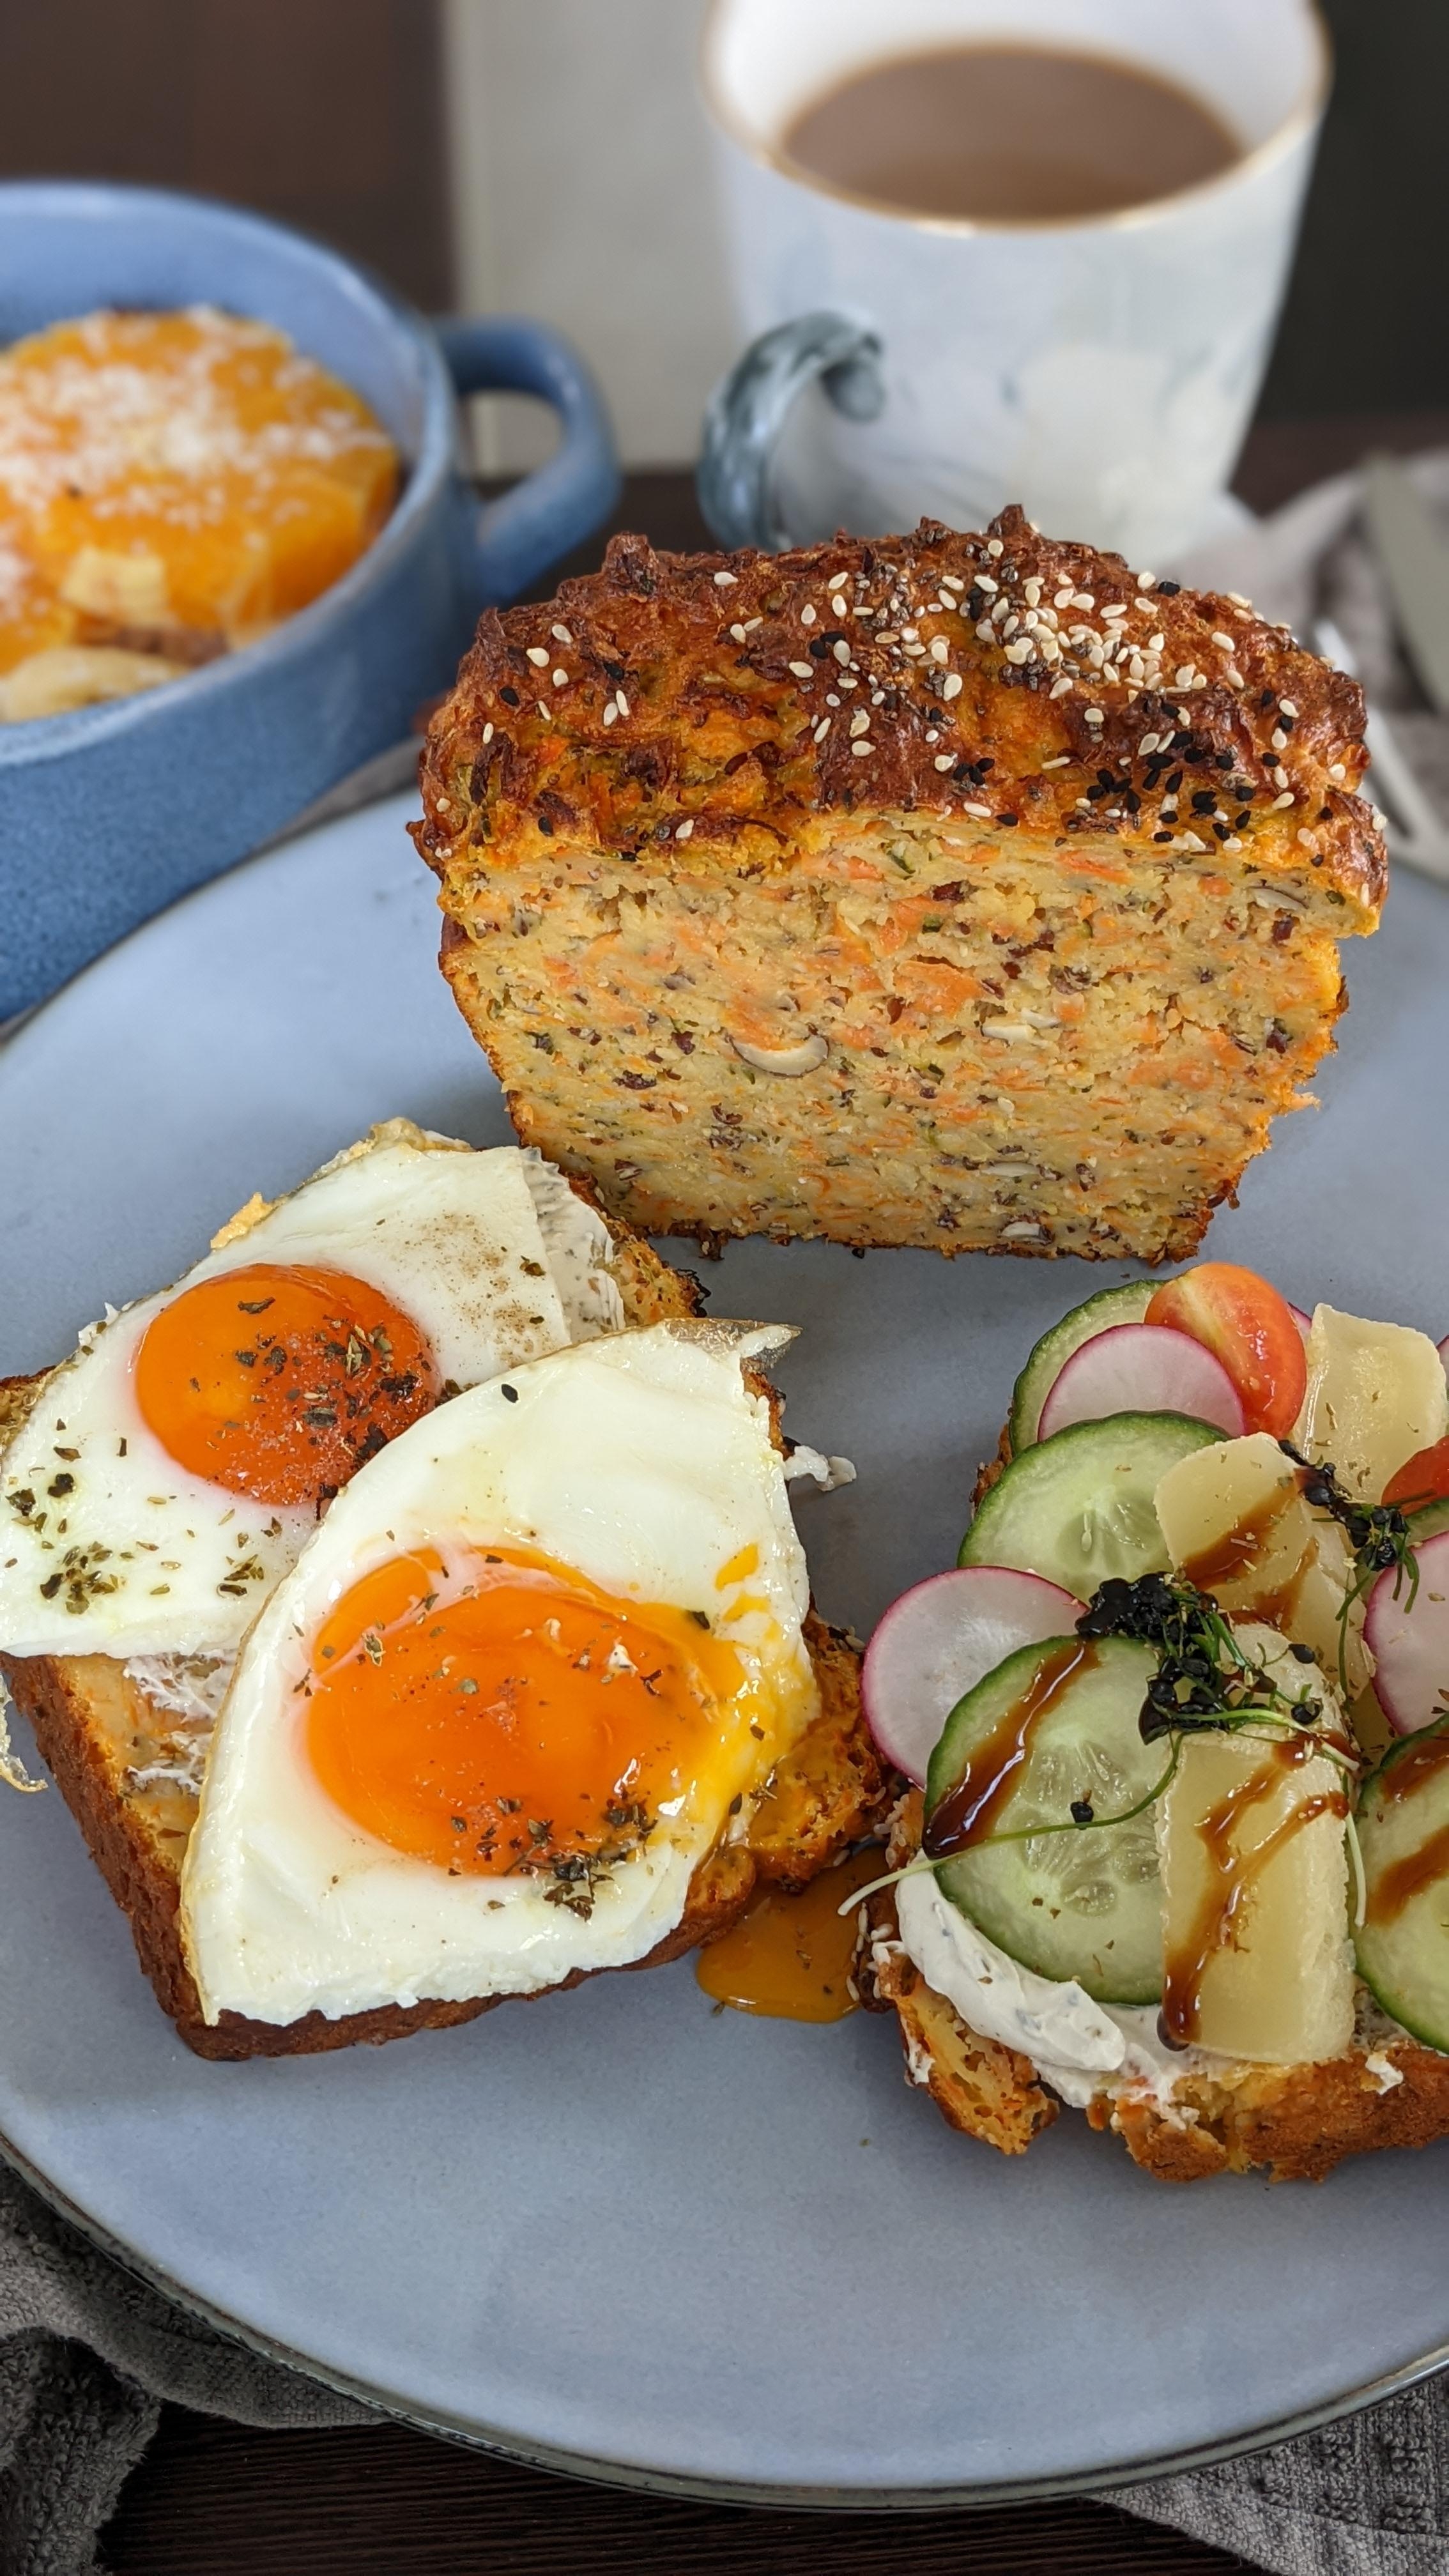 Heute gibt es selbstgebackenes Zucchini-Protein-Brot.🍞 #brot #backen #gesund #food #essen #picknick #healthy #lecker